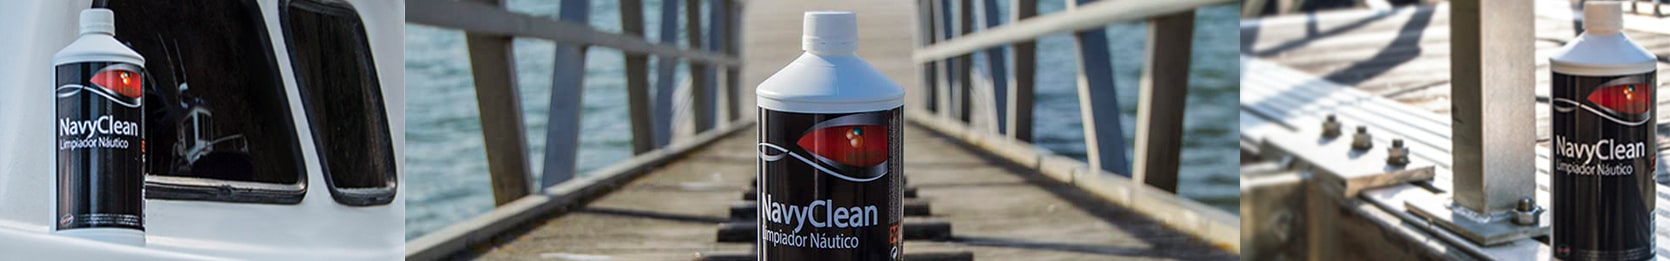 Sisbrill NavyClean limpiador náutico aplicado sobre casco de barco con fondo marítimo.